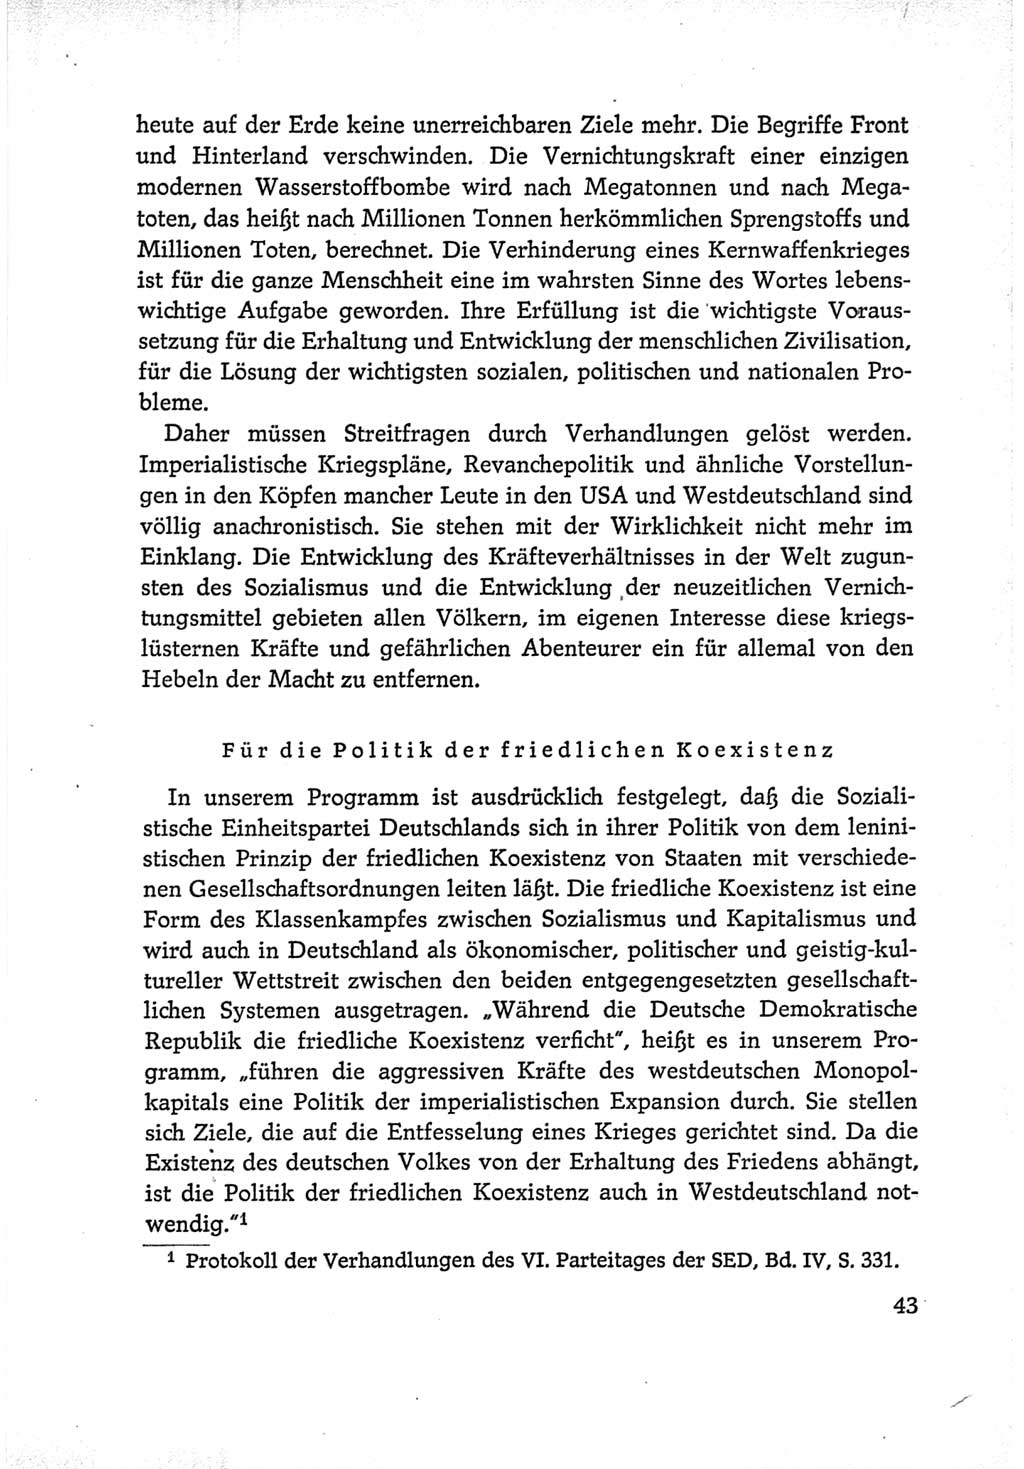 Protokoll der Verhandlungen des Ⅵ. Parteitages der Sozialistischen Einheitspartei Deutschlands (SED) [Deutsche Demokratische Republik (DDR)] 1963, Band Ⅰ, Seite 43 (Prot. Verh. Ⅵ. PT SED DDR 1963, Bd. Ⅰ, S. 43)